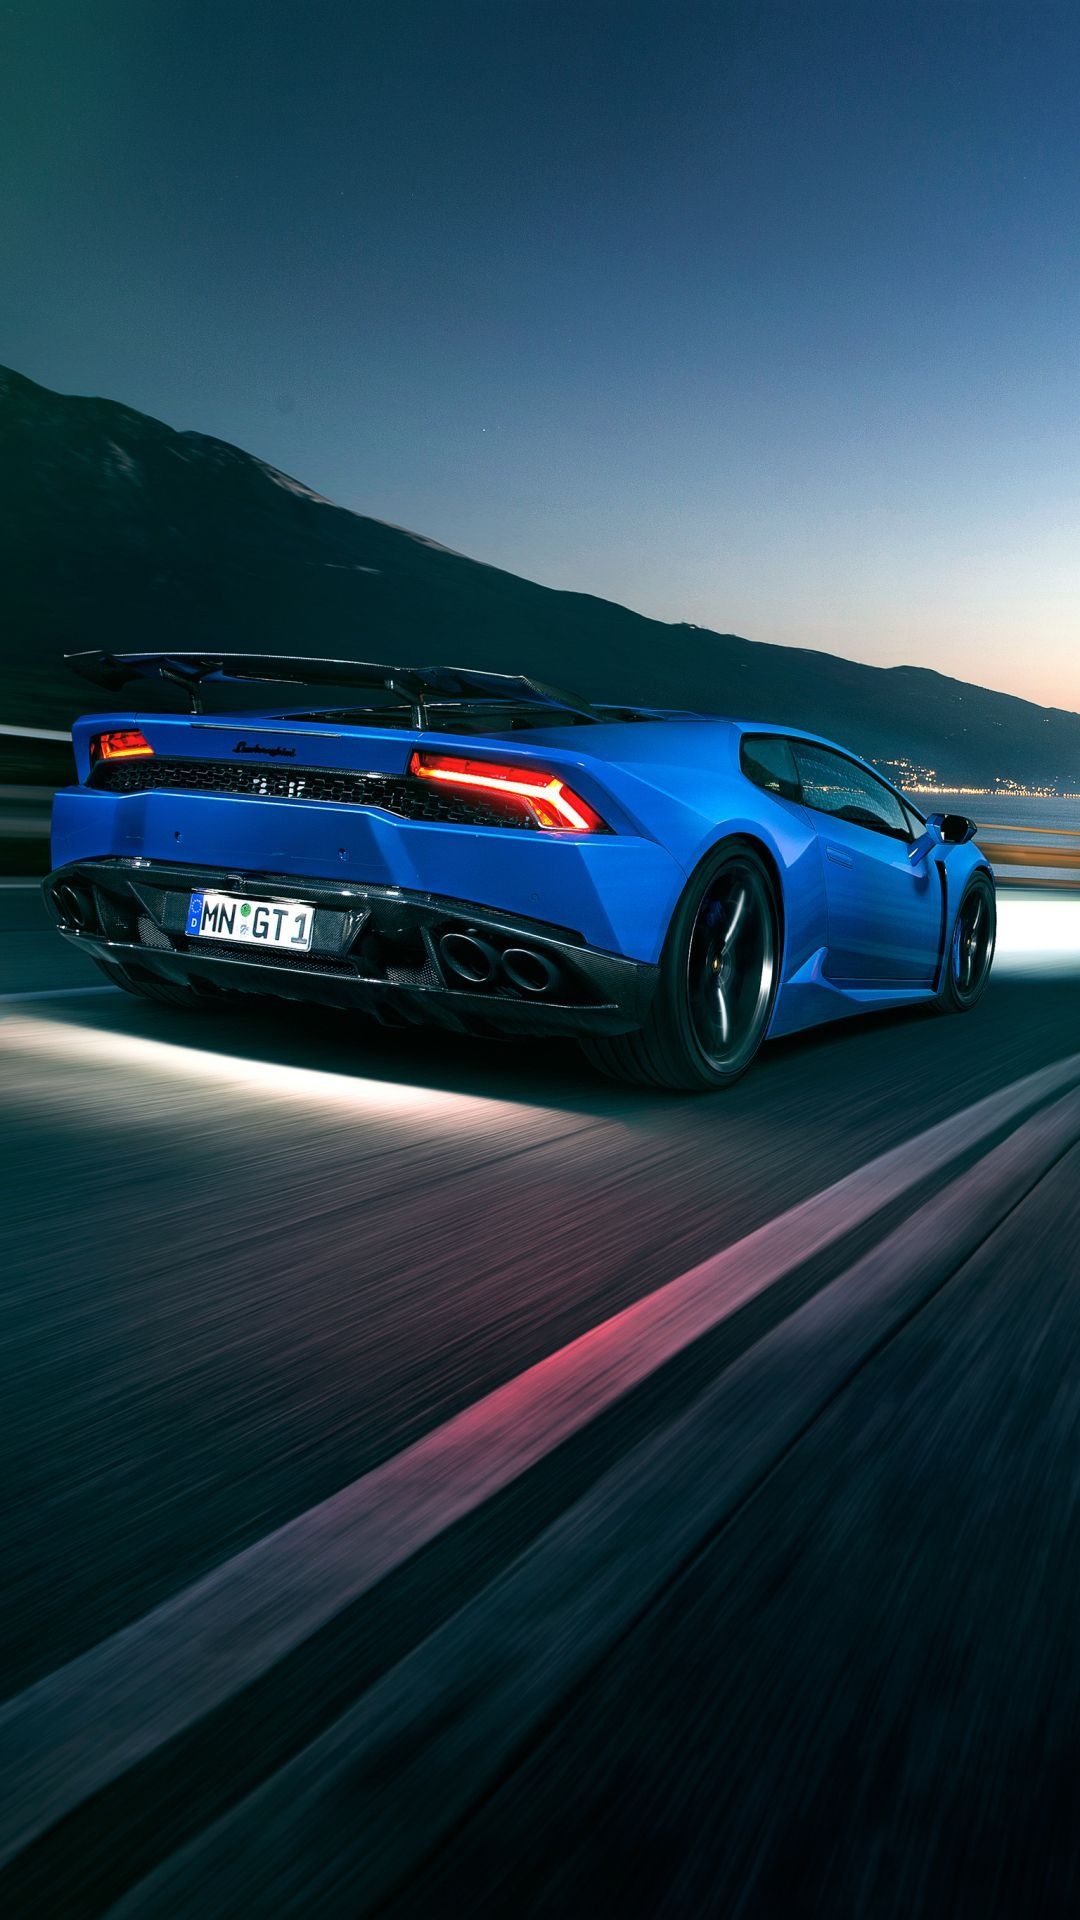 HD Car Wallpaper, Blue Lamborghini, Supercars wallpaper, Sports car wallpaper, 1080x1920 Full HD Phone